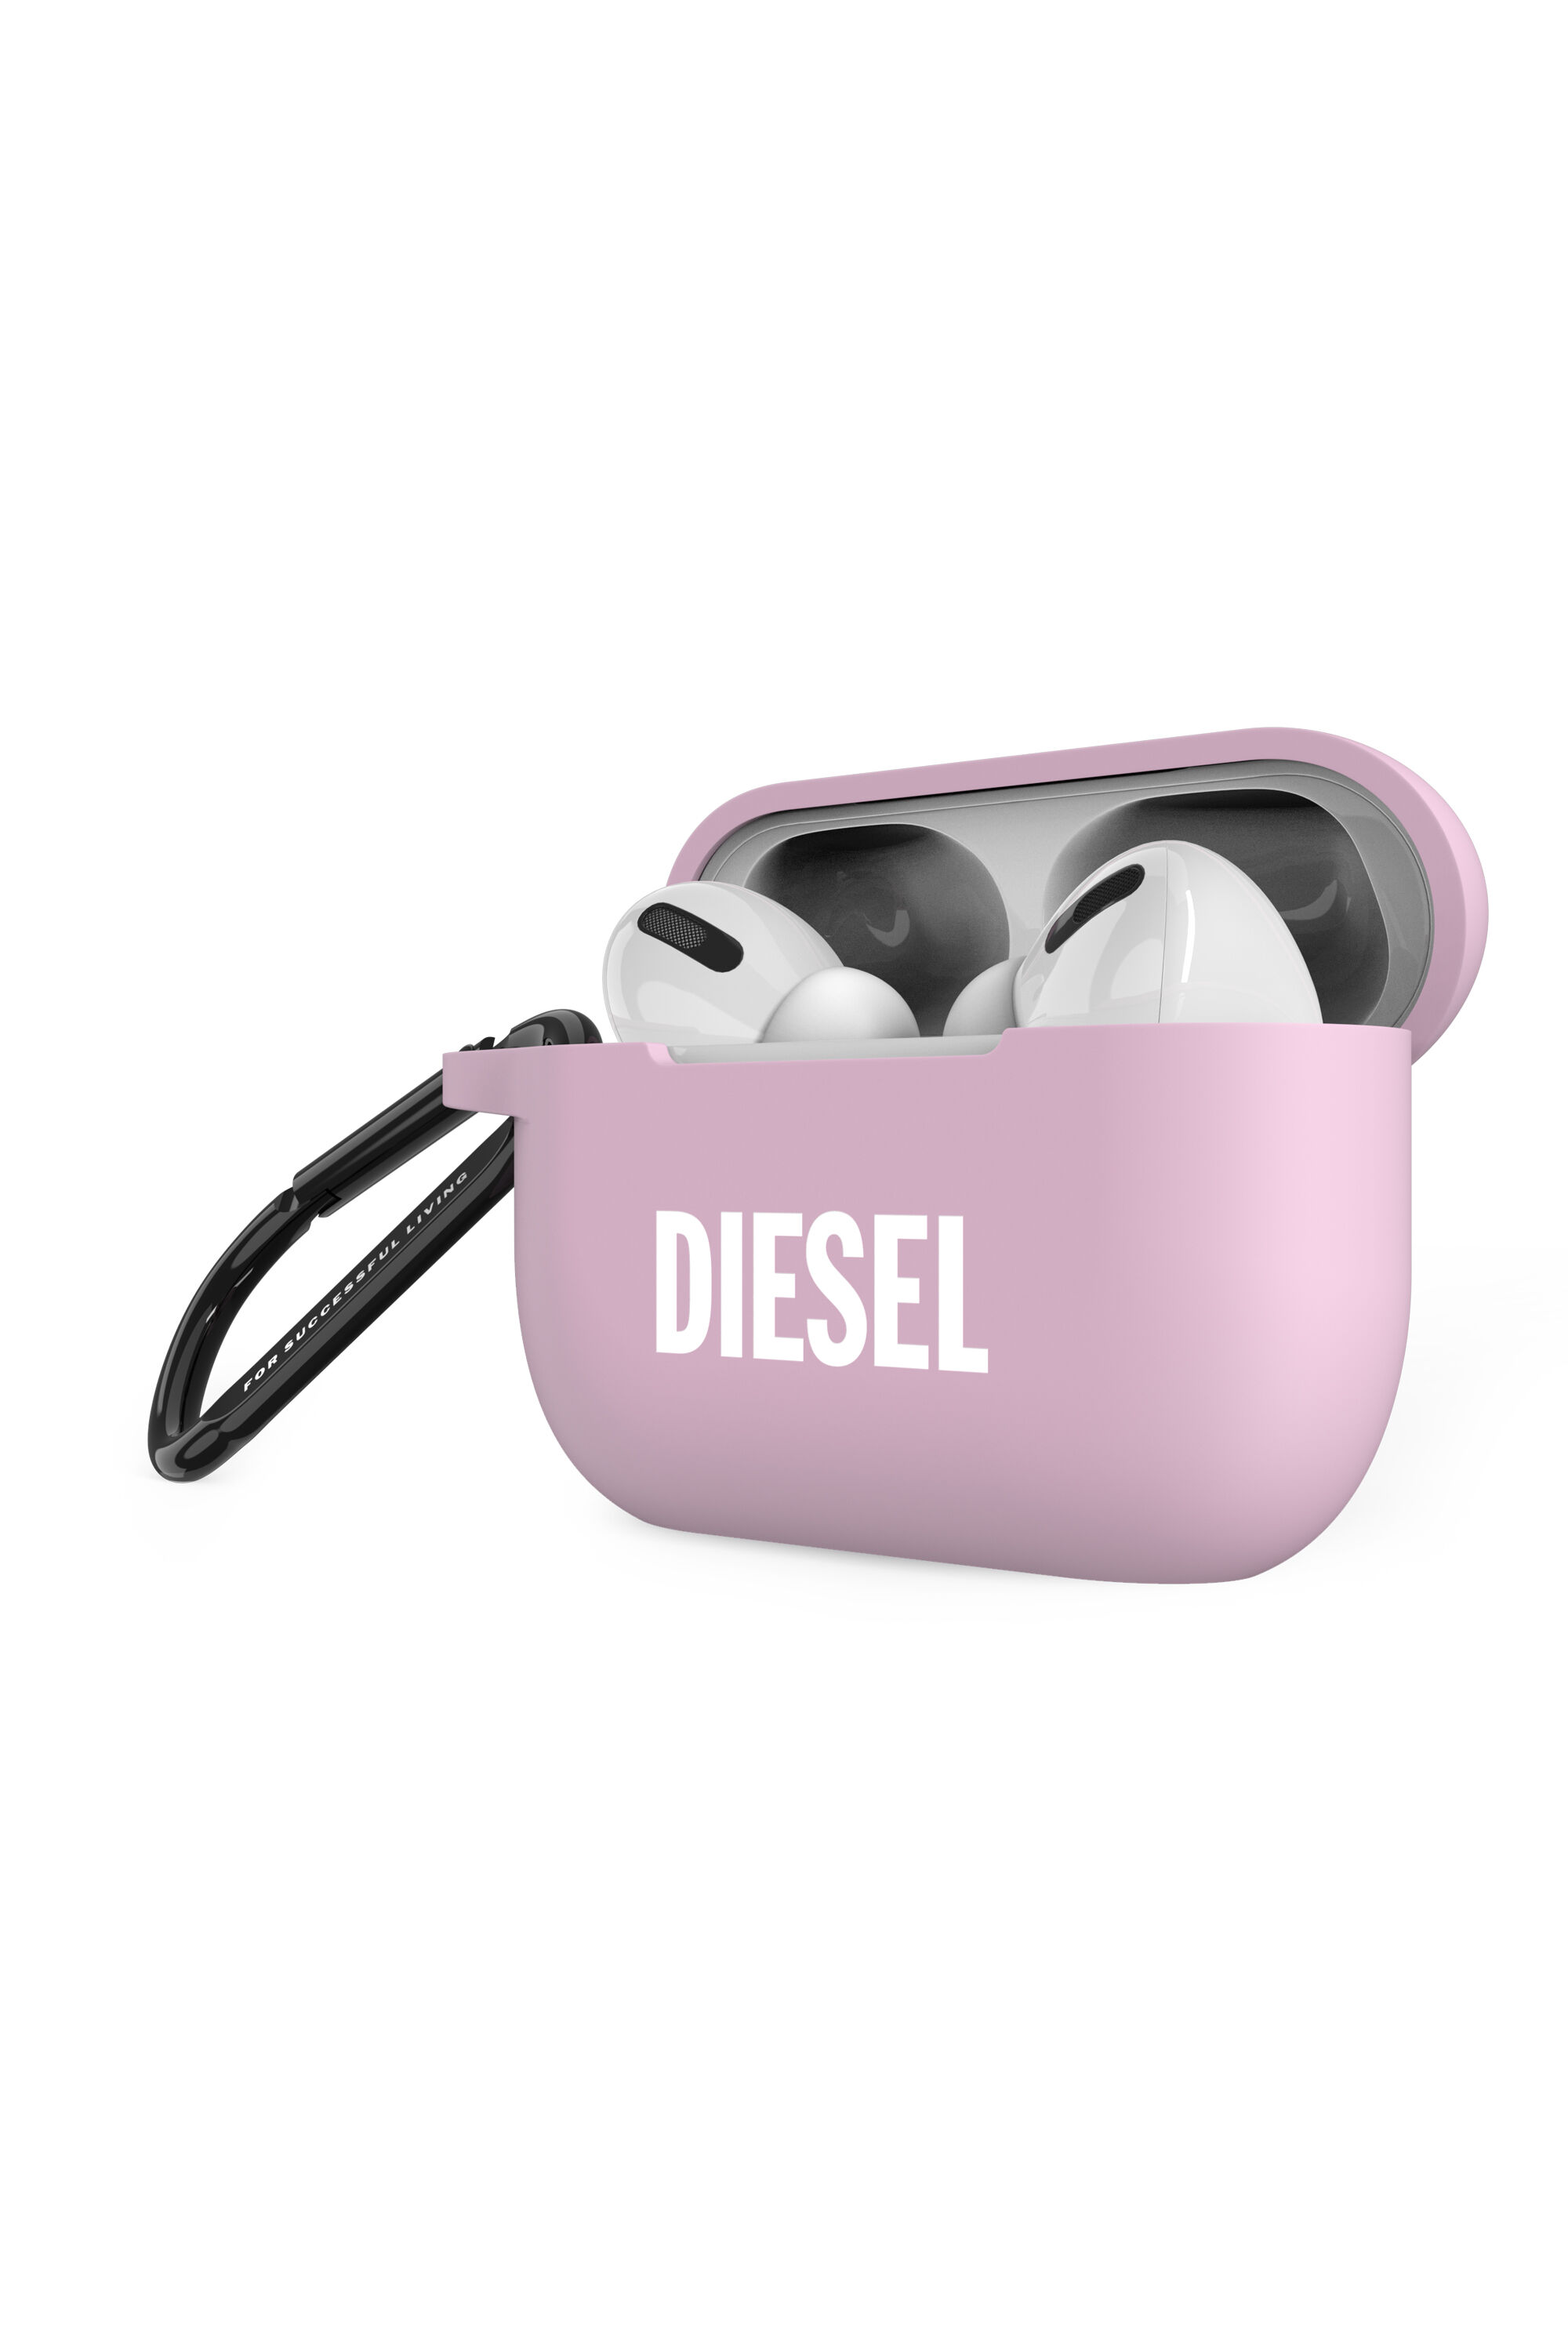 Diesel - 49862 AIRPOD CASE, Pink - Image 3